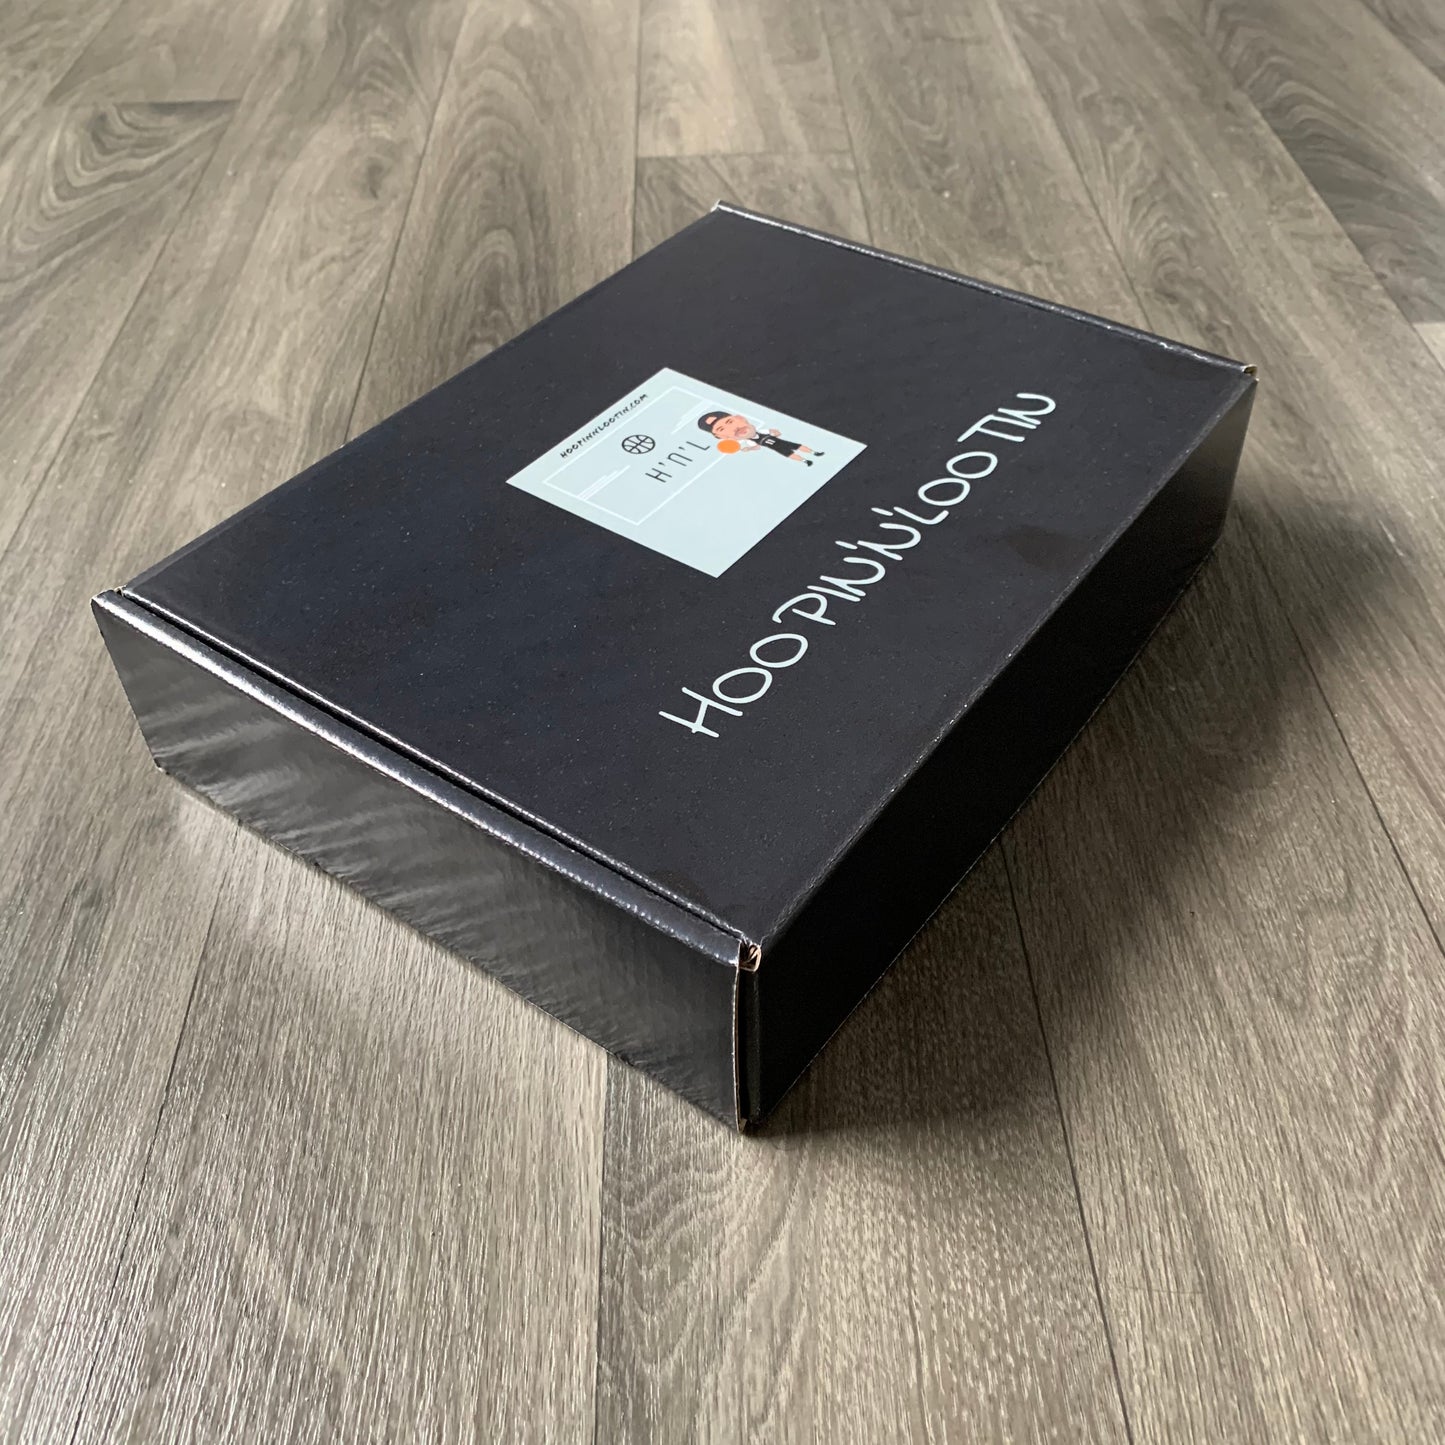 H’n’L Gift Box Packaging!